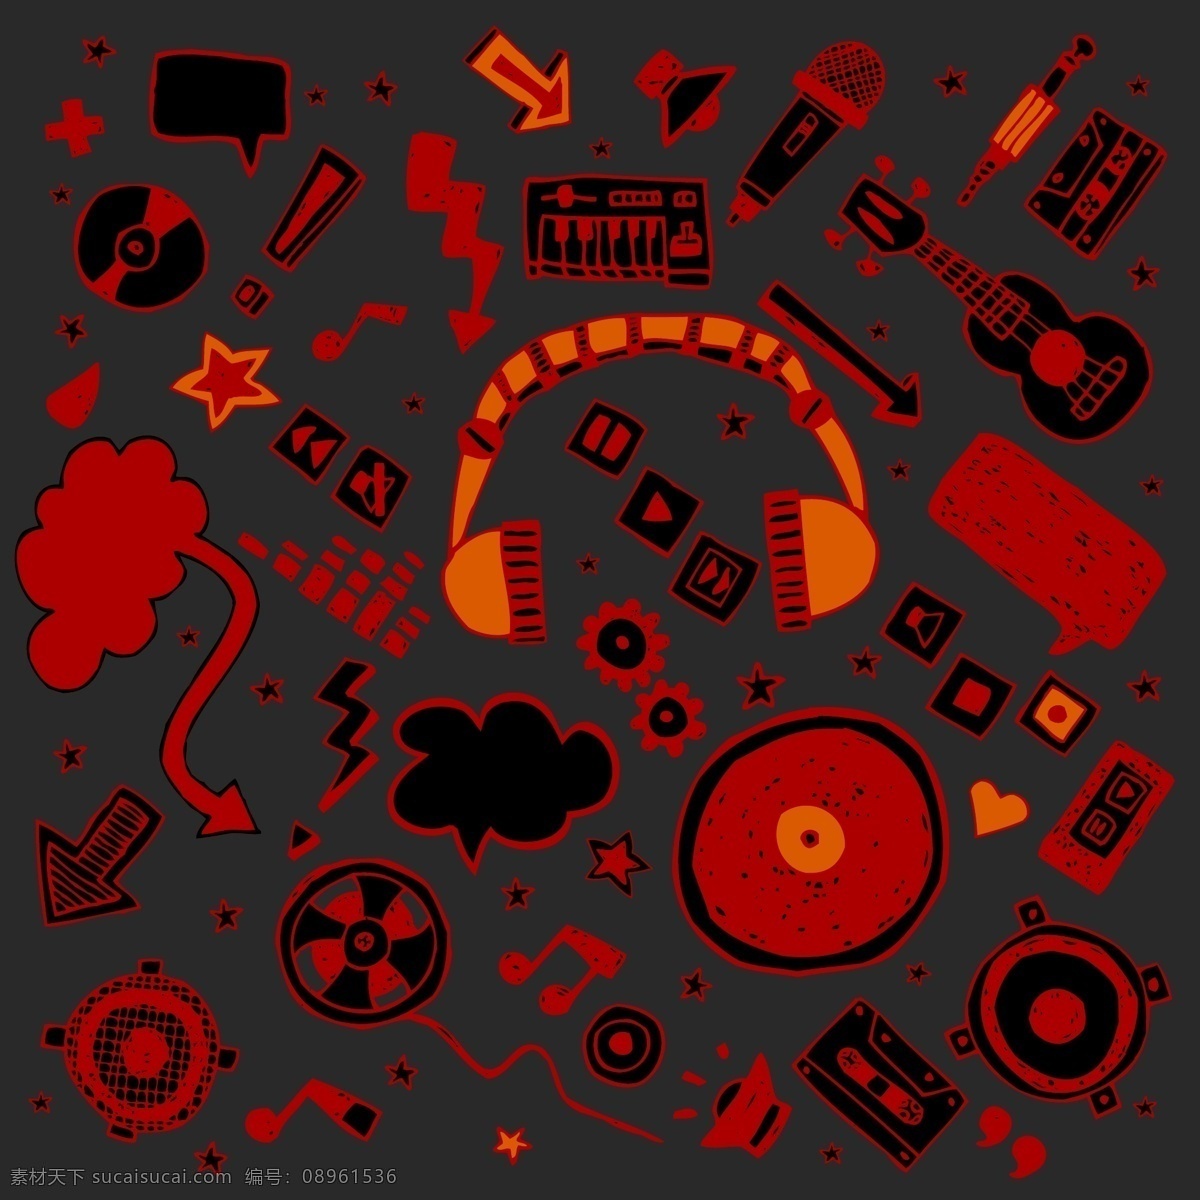 音乐图标设计 耳机 dj音乐图标 矢量图标 手绘图标 涂鸦图标 标志图标 矢量素材 黑色